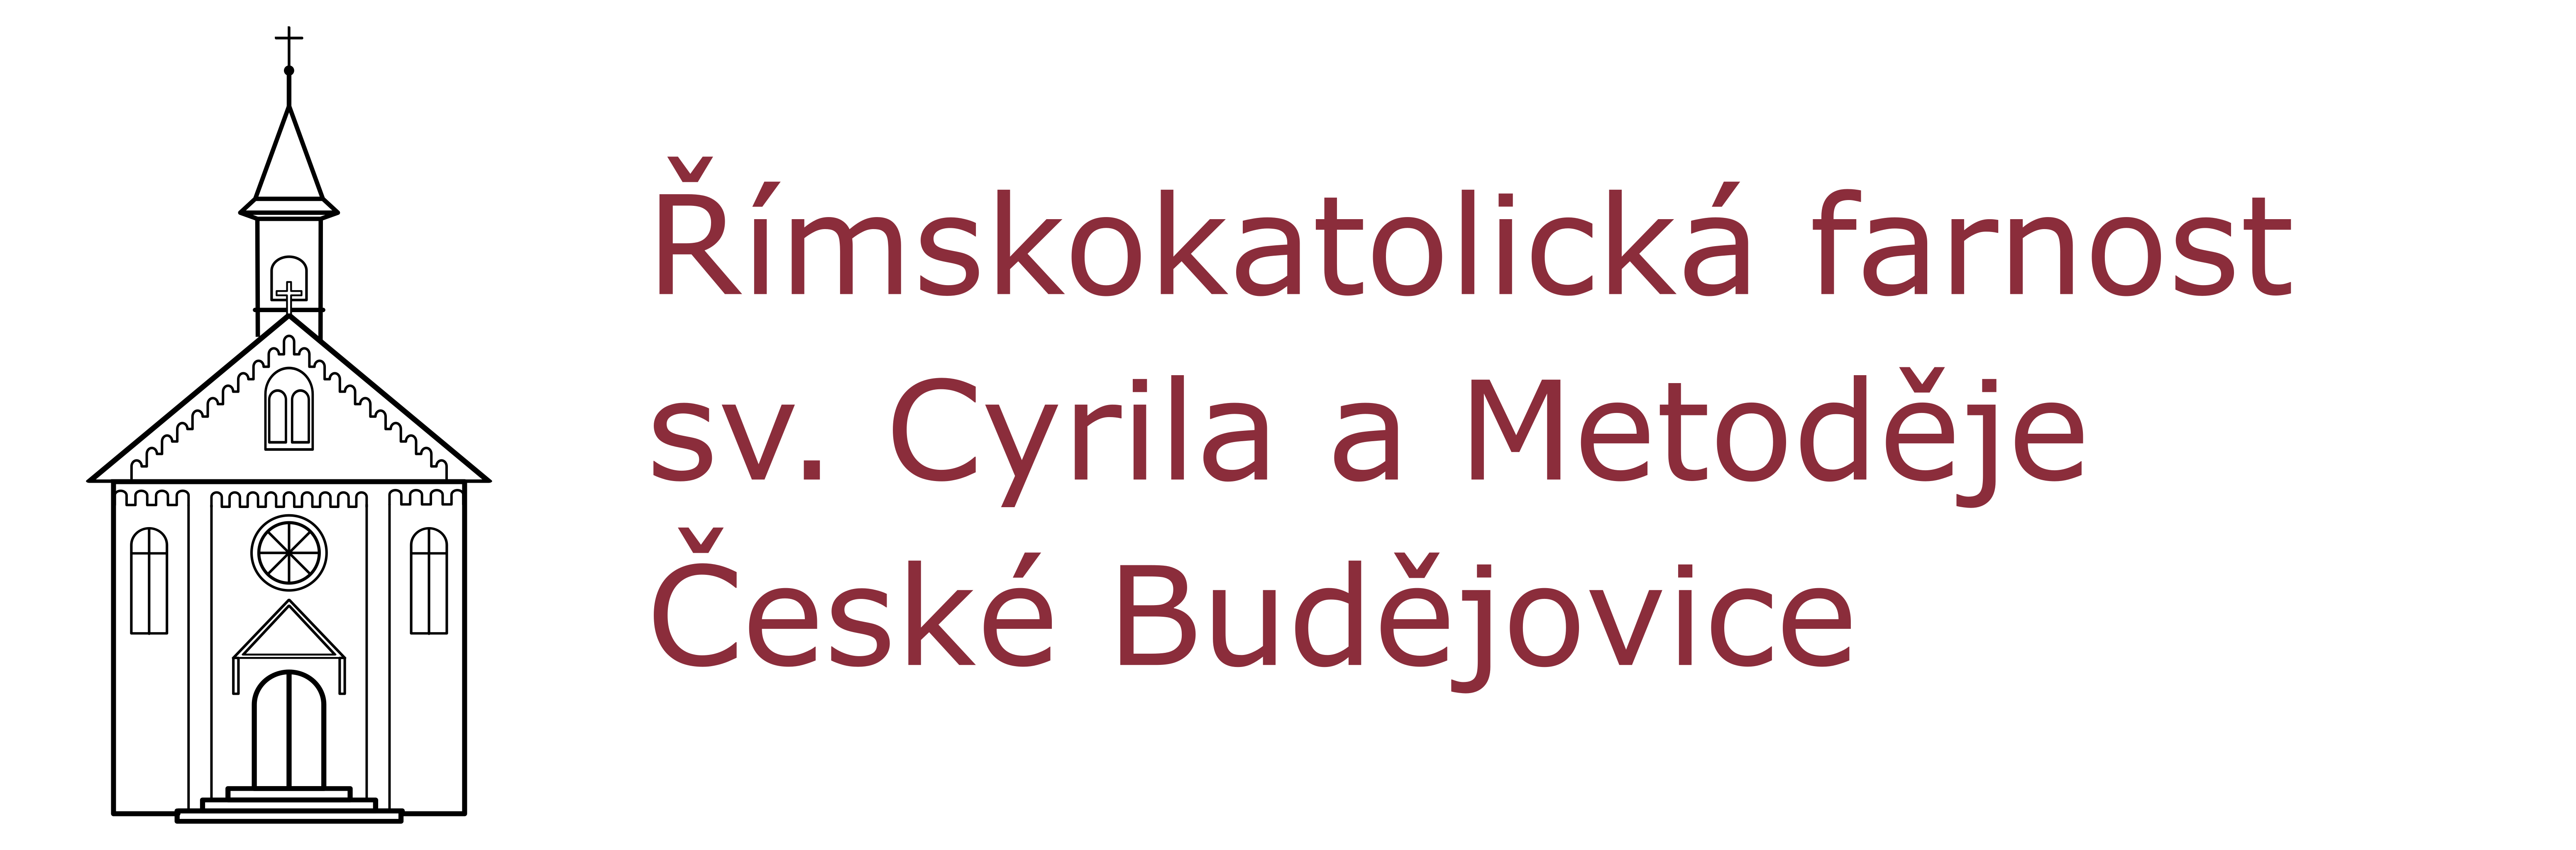 Logo Rezervace intence online - Římskokatolická farnost sv. Cyrila a Metoděje České Budějovice - Suché Vrbné